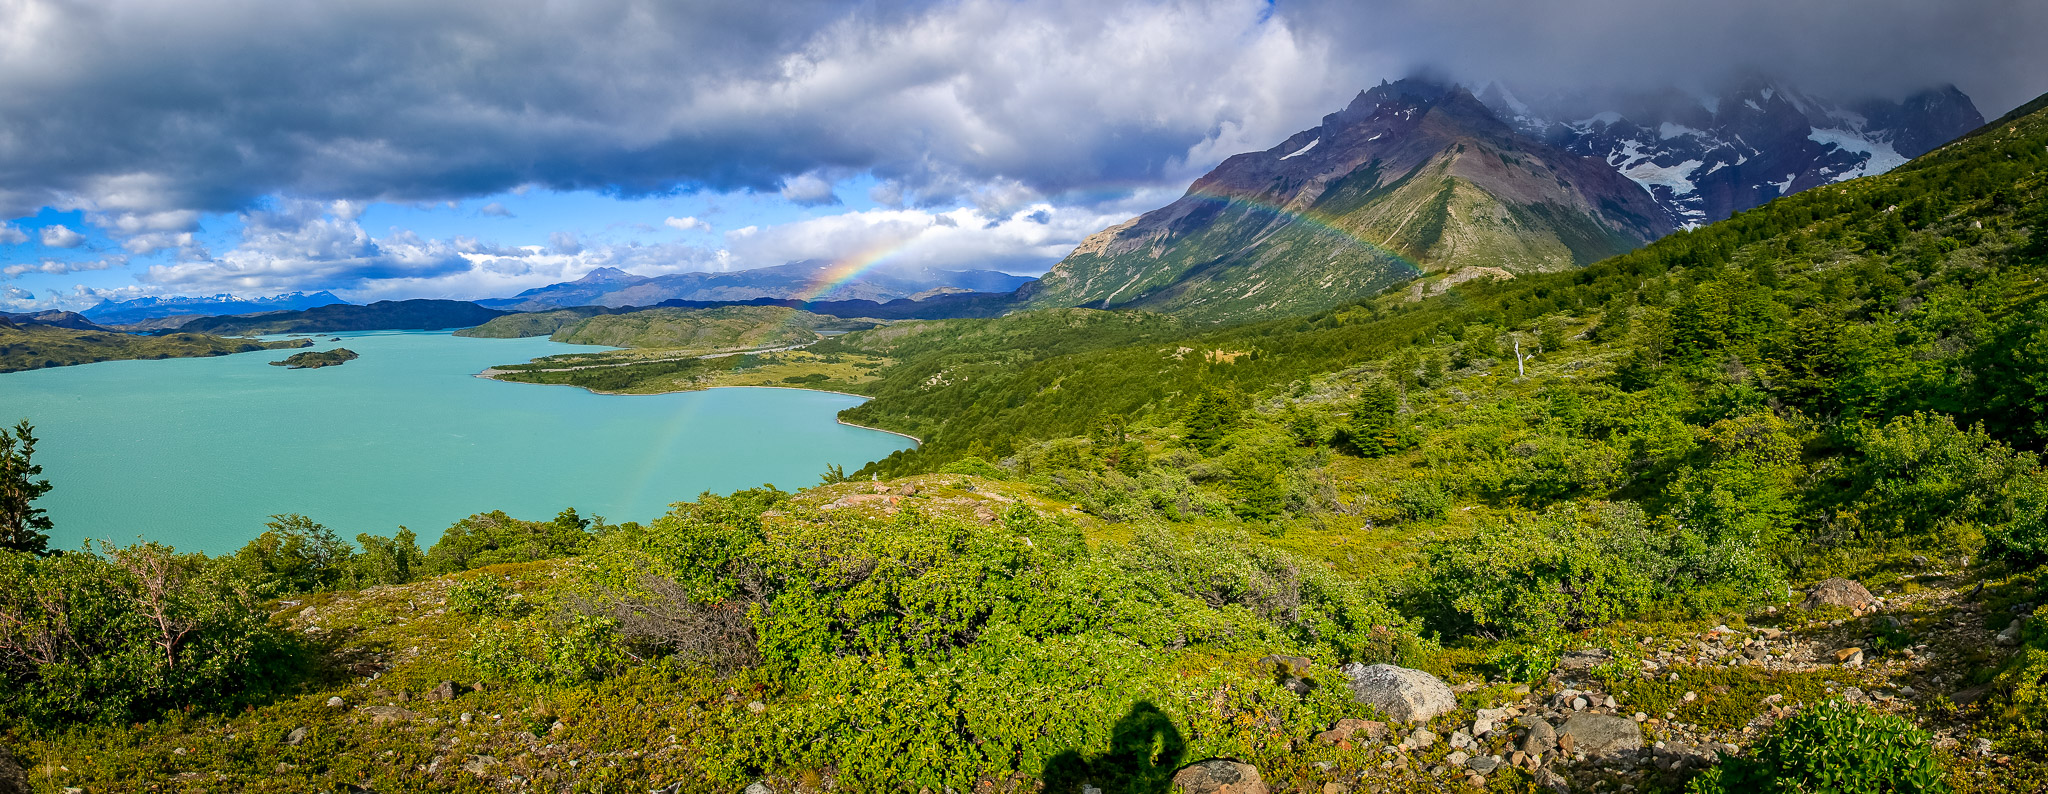 Rainbow over Lago Nordenskjöld, Torres del Paine